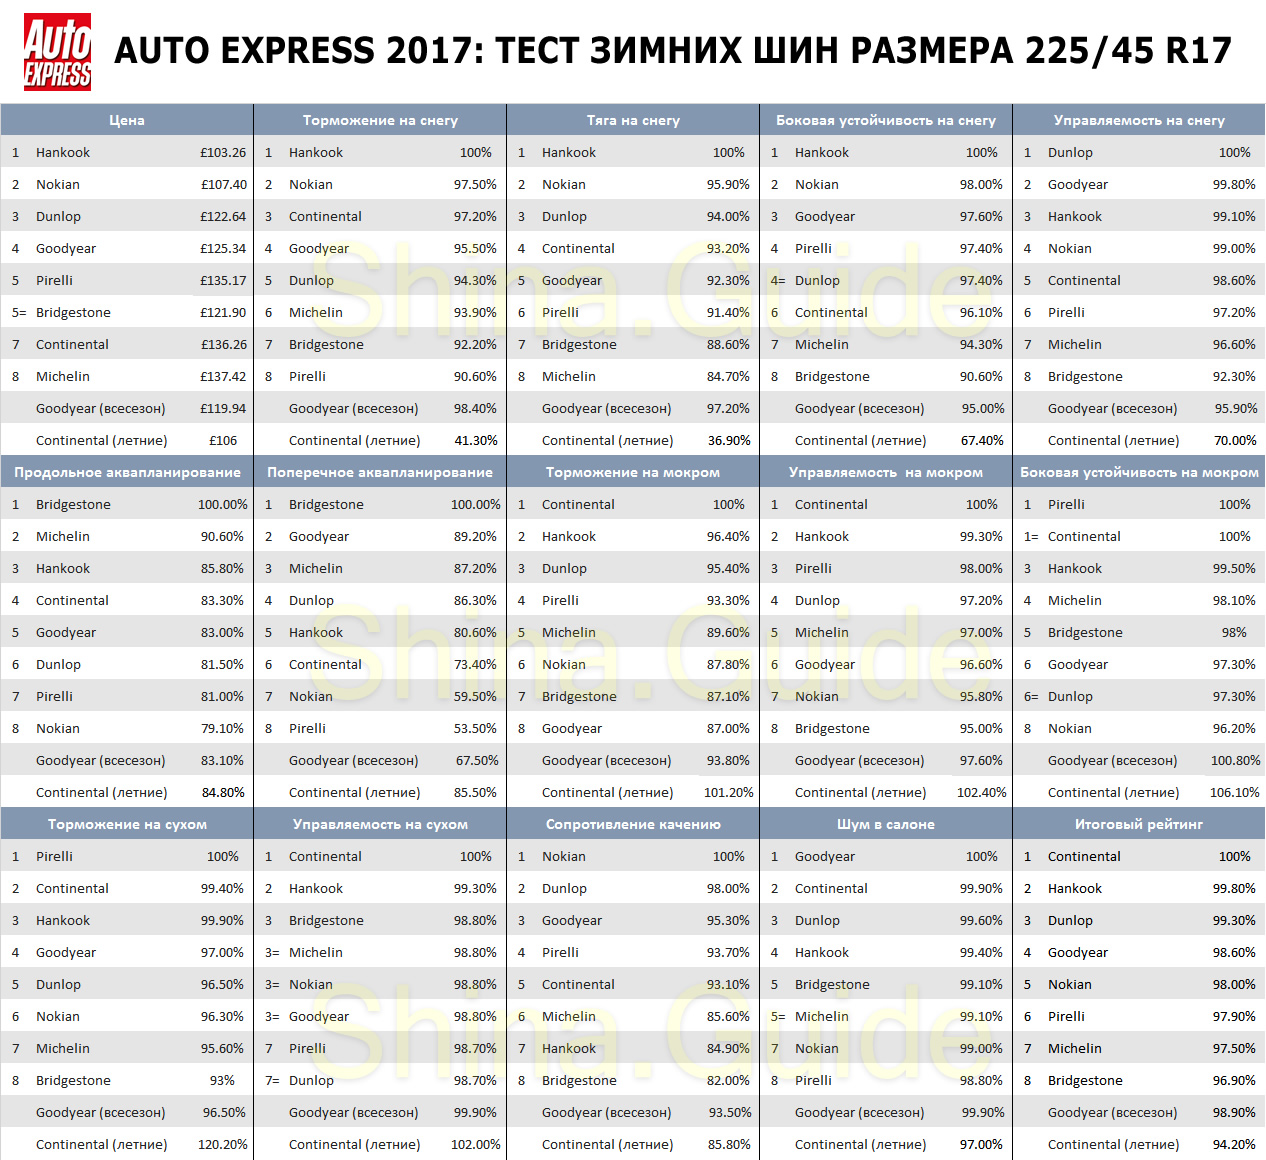 Сводная таблица результатов теста зимних шин размера 225/45 R17 от Auto Express, 2017